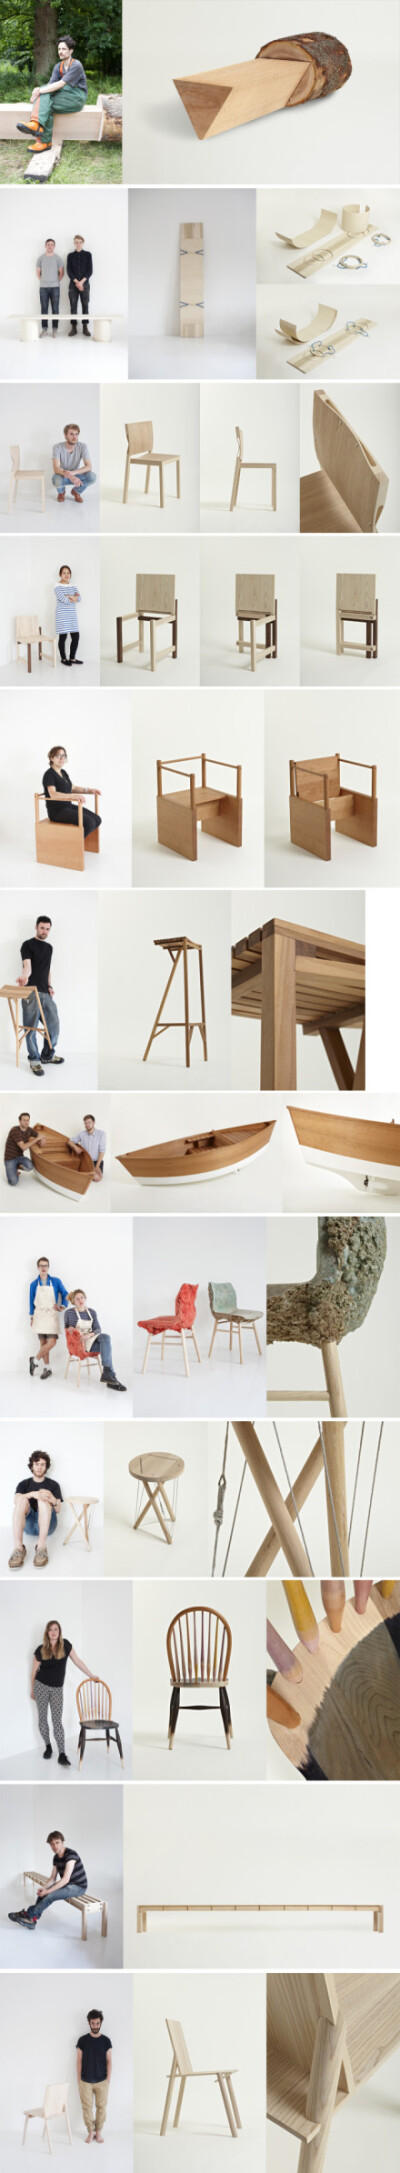 伦敦皇家艺术学院（RCA）家具专业学生的作品，在伦敦设计节上以&quot;Out of the Woods: Adventure of 12 hardwood chairs&quot;为题展出中，这是学院和美国阔叶木协会合作的项目，学生被要求使用北美硬木设计一款实…